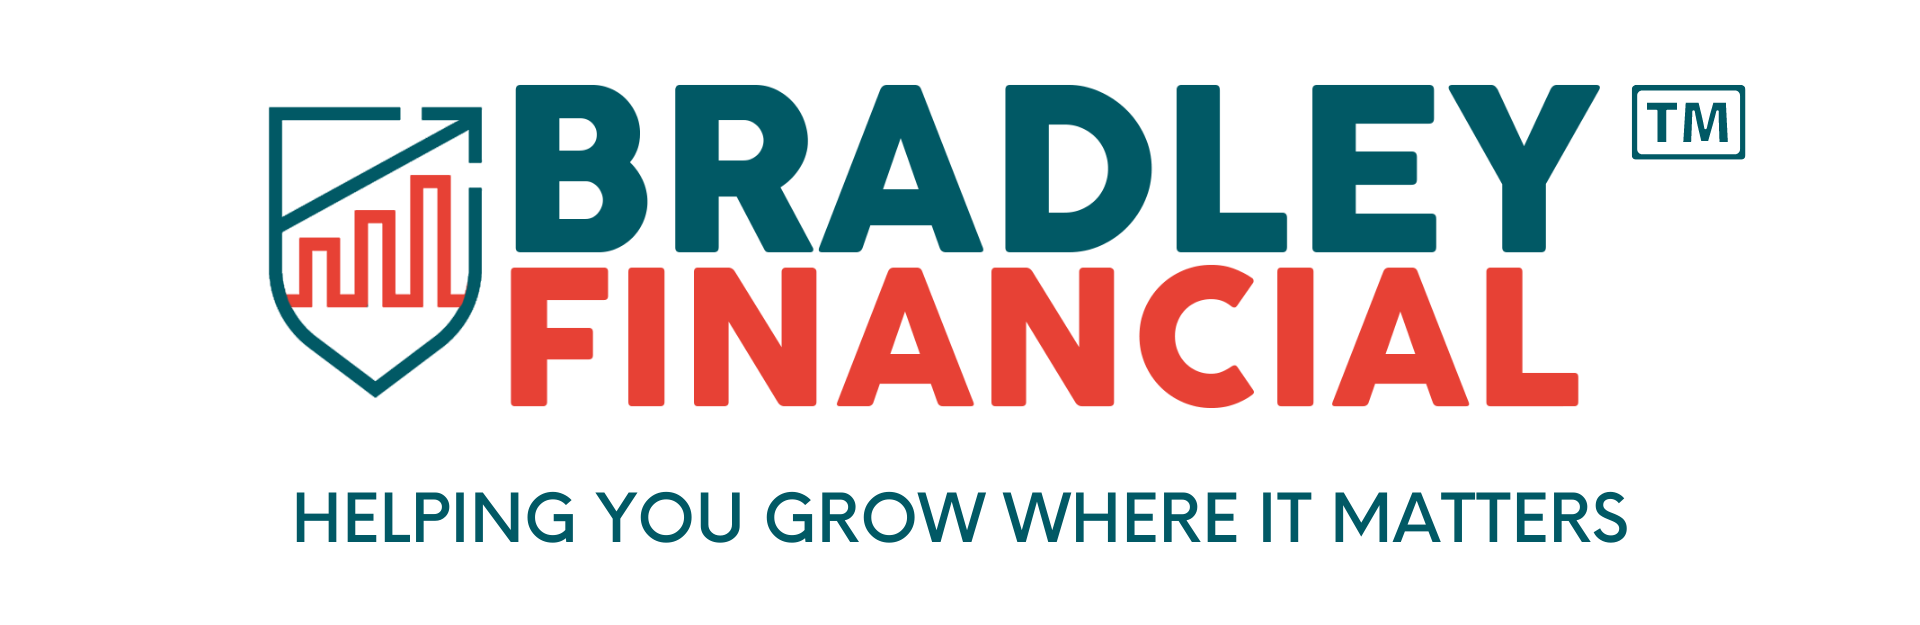 Bradley Financial Services, LLC